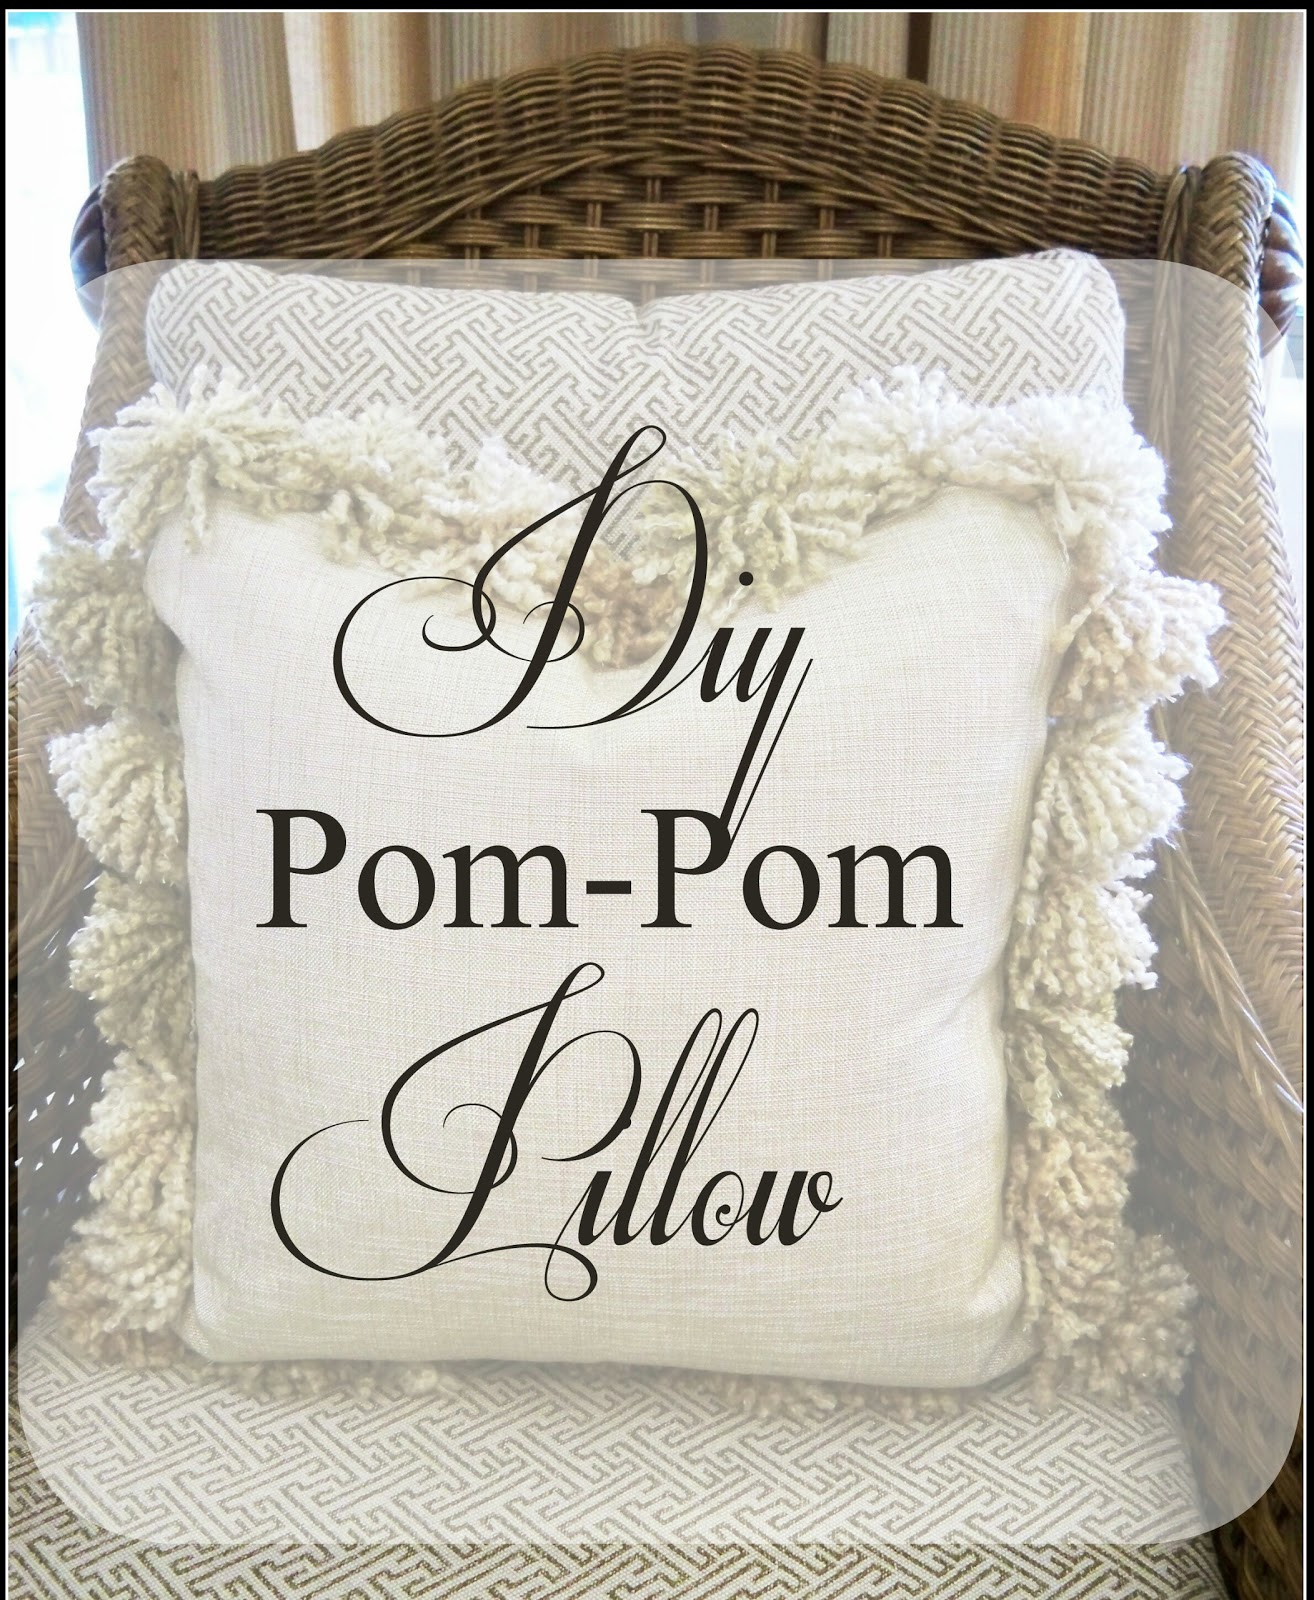 Those Spendy Pom Pom Pillows - Diy Copy Cat